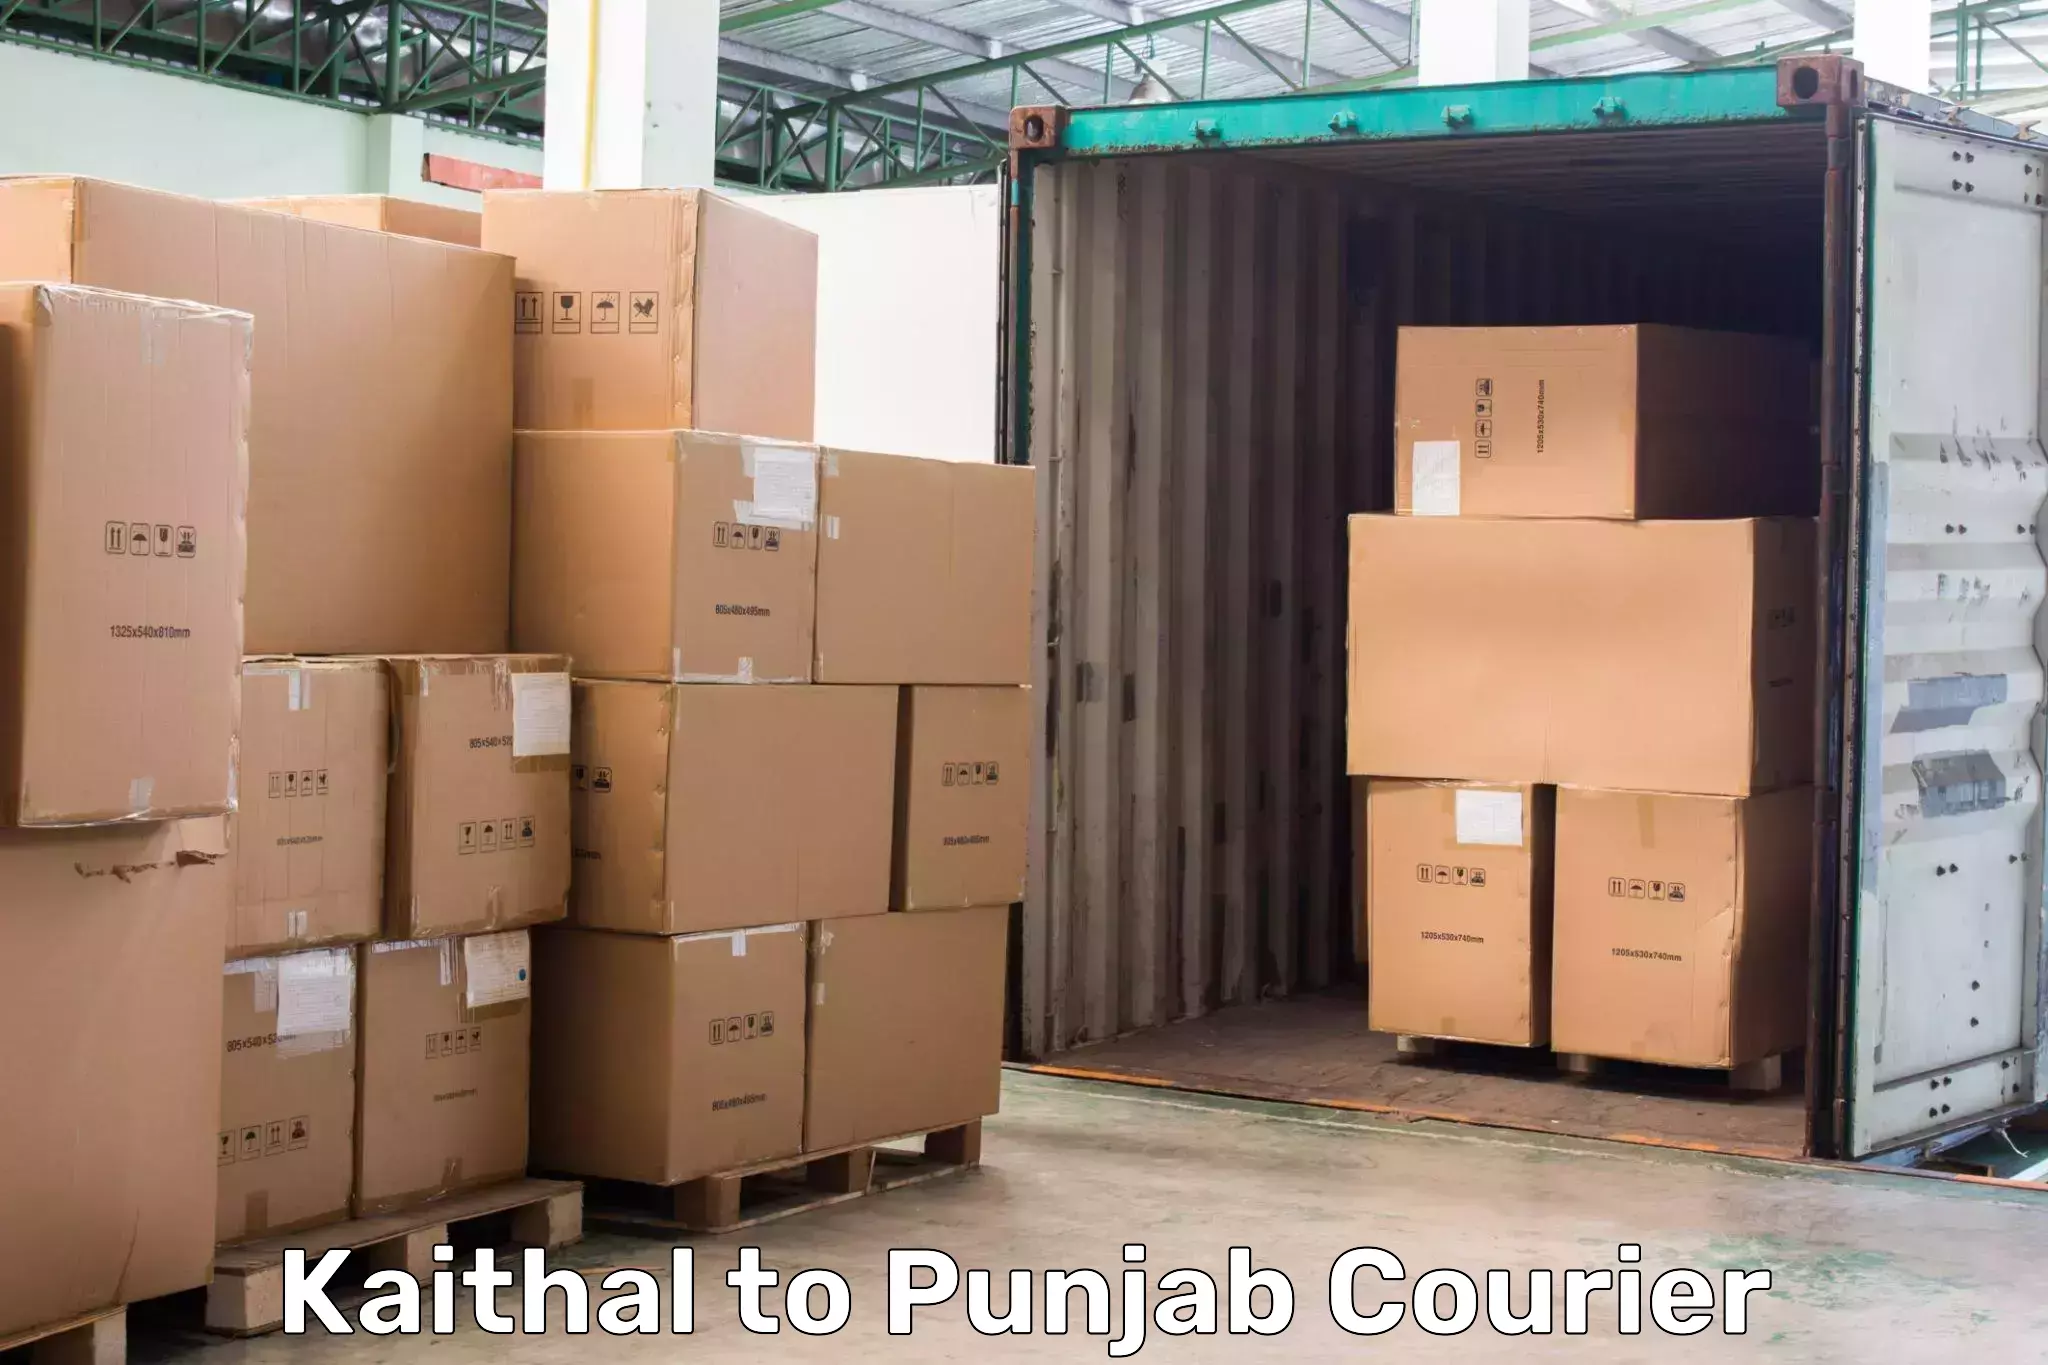 Courier service comparison Kaithal to Phillaur